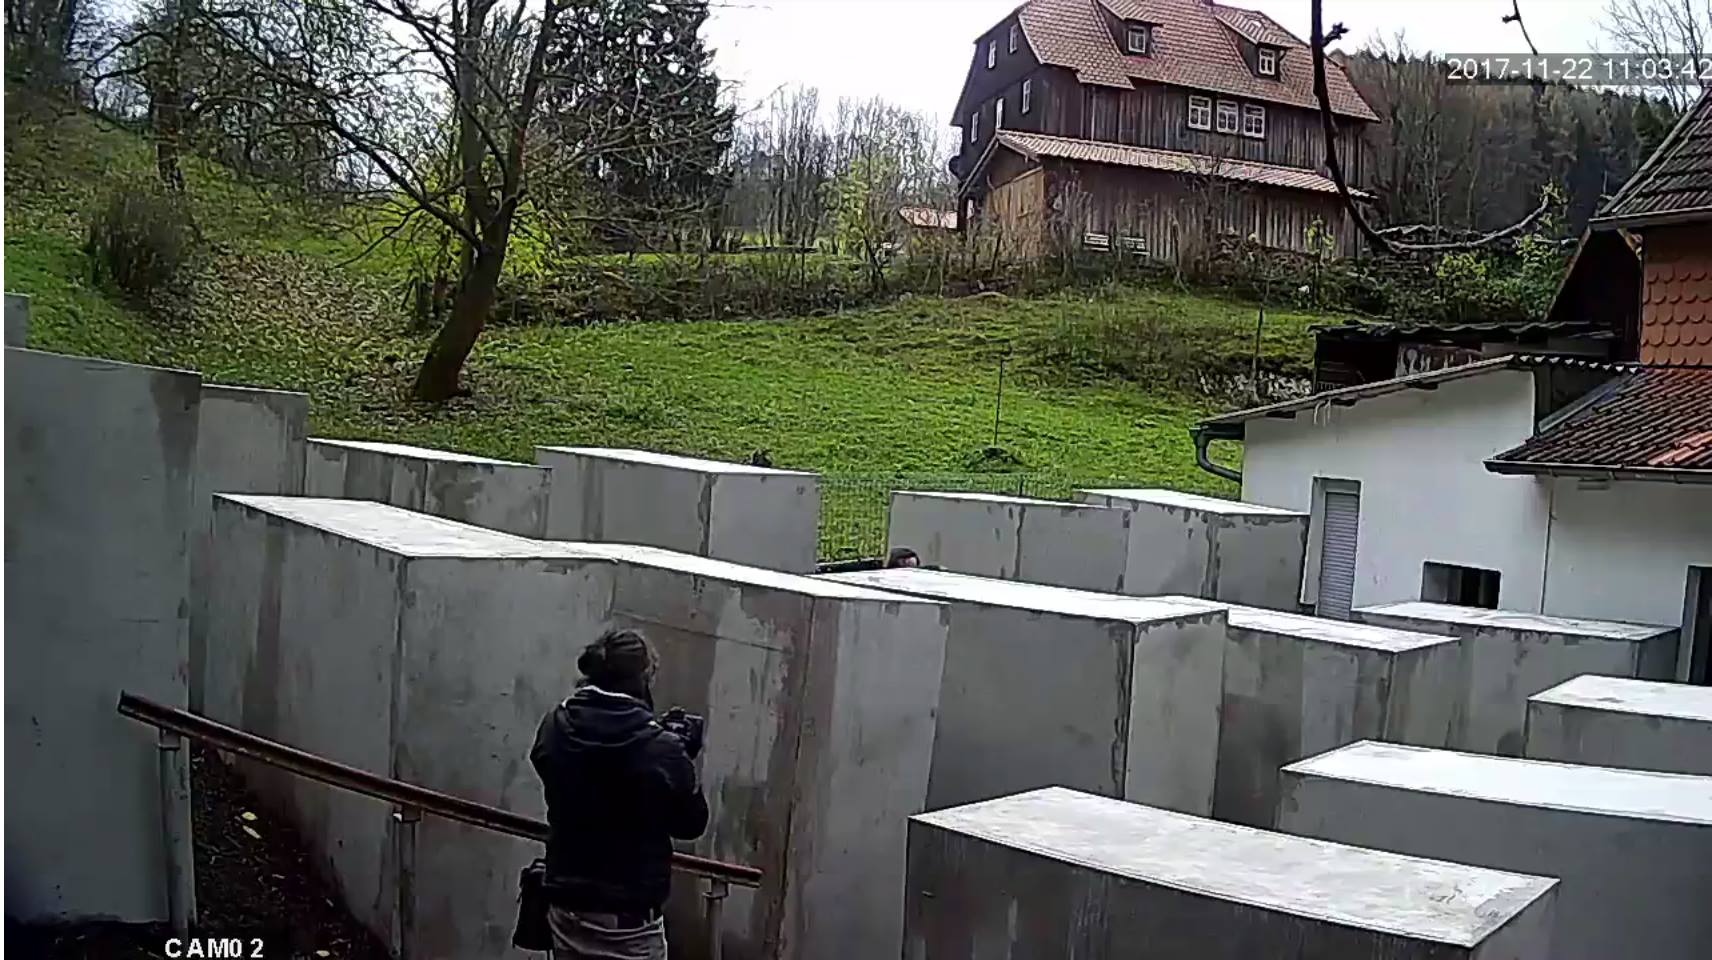 Egy német politikus szégyennek nevezte a berlini holokauszt-emlékművet, most a háza mellett építették fel ugyanazt kicsiben